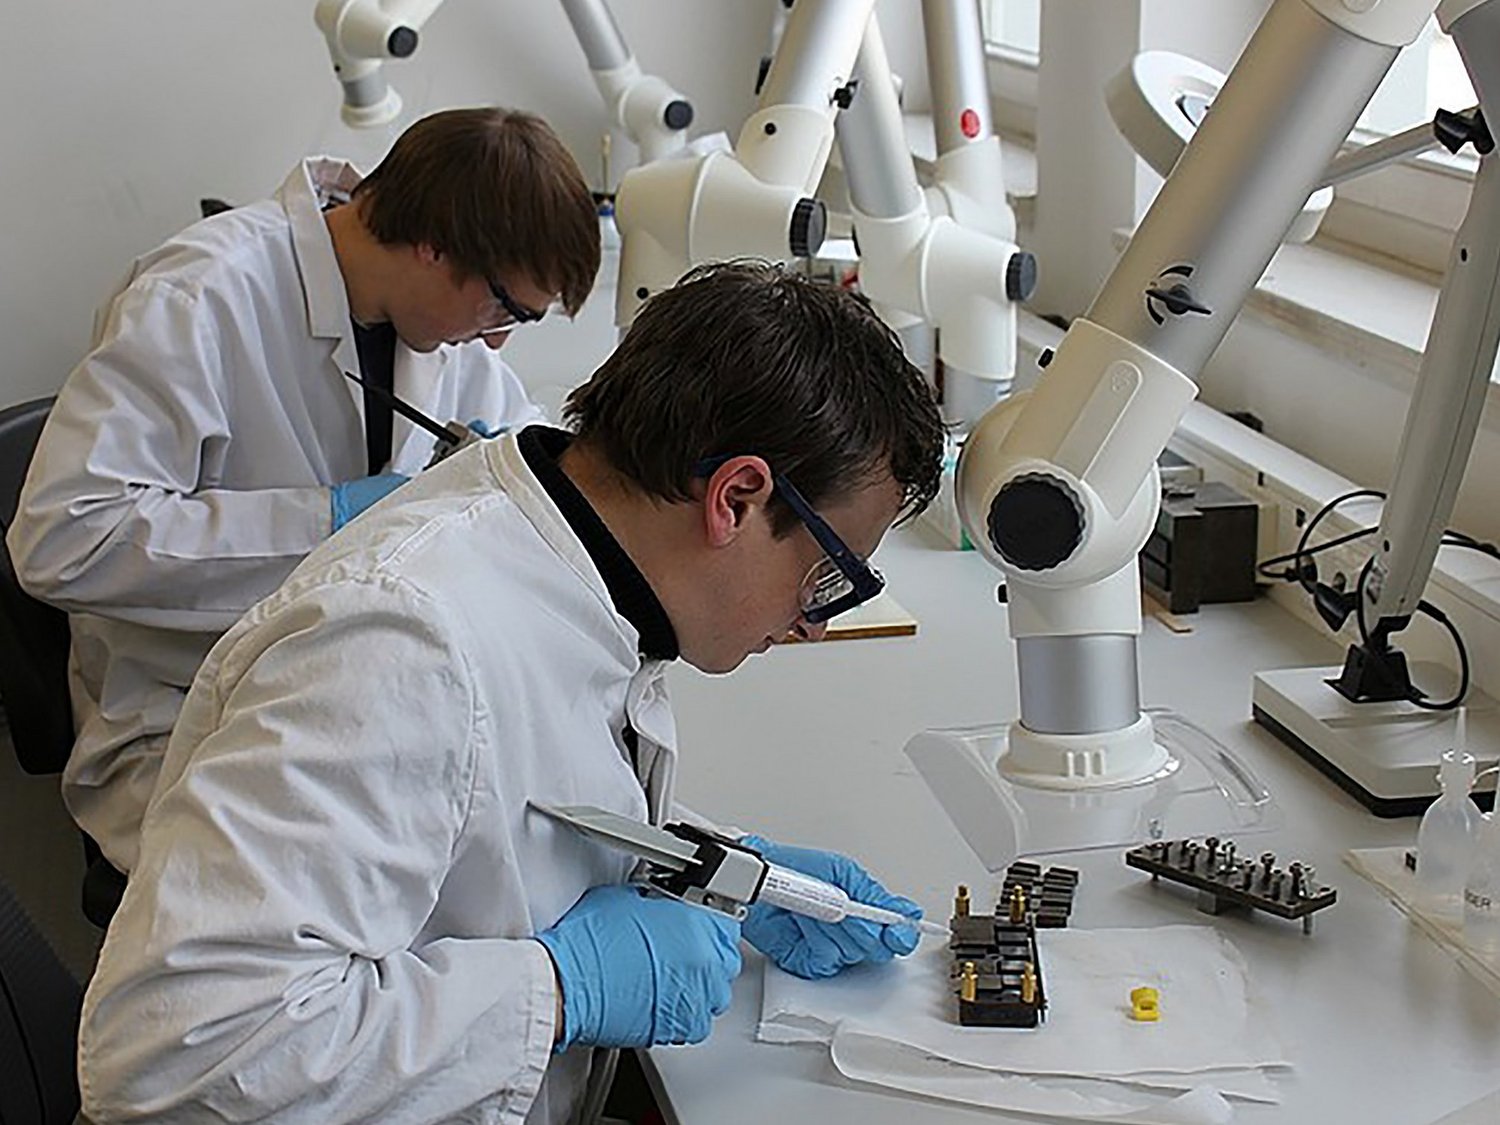 Zwei Personen in weißer Laborkleidung und Schutzbrillen bei der Arbeit mit Spezialklebepistolen am Labortisch